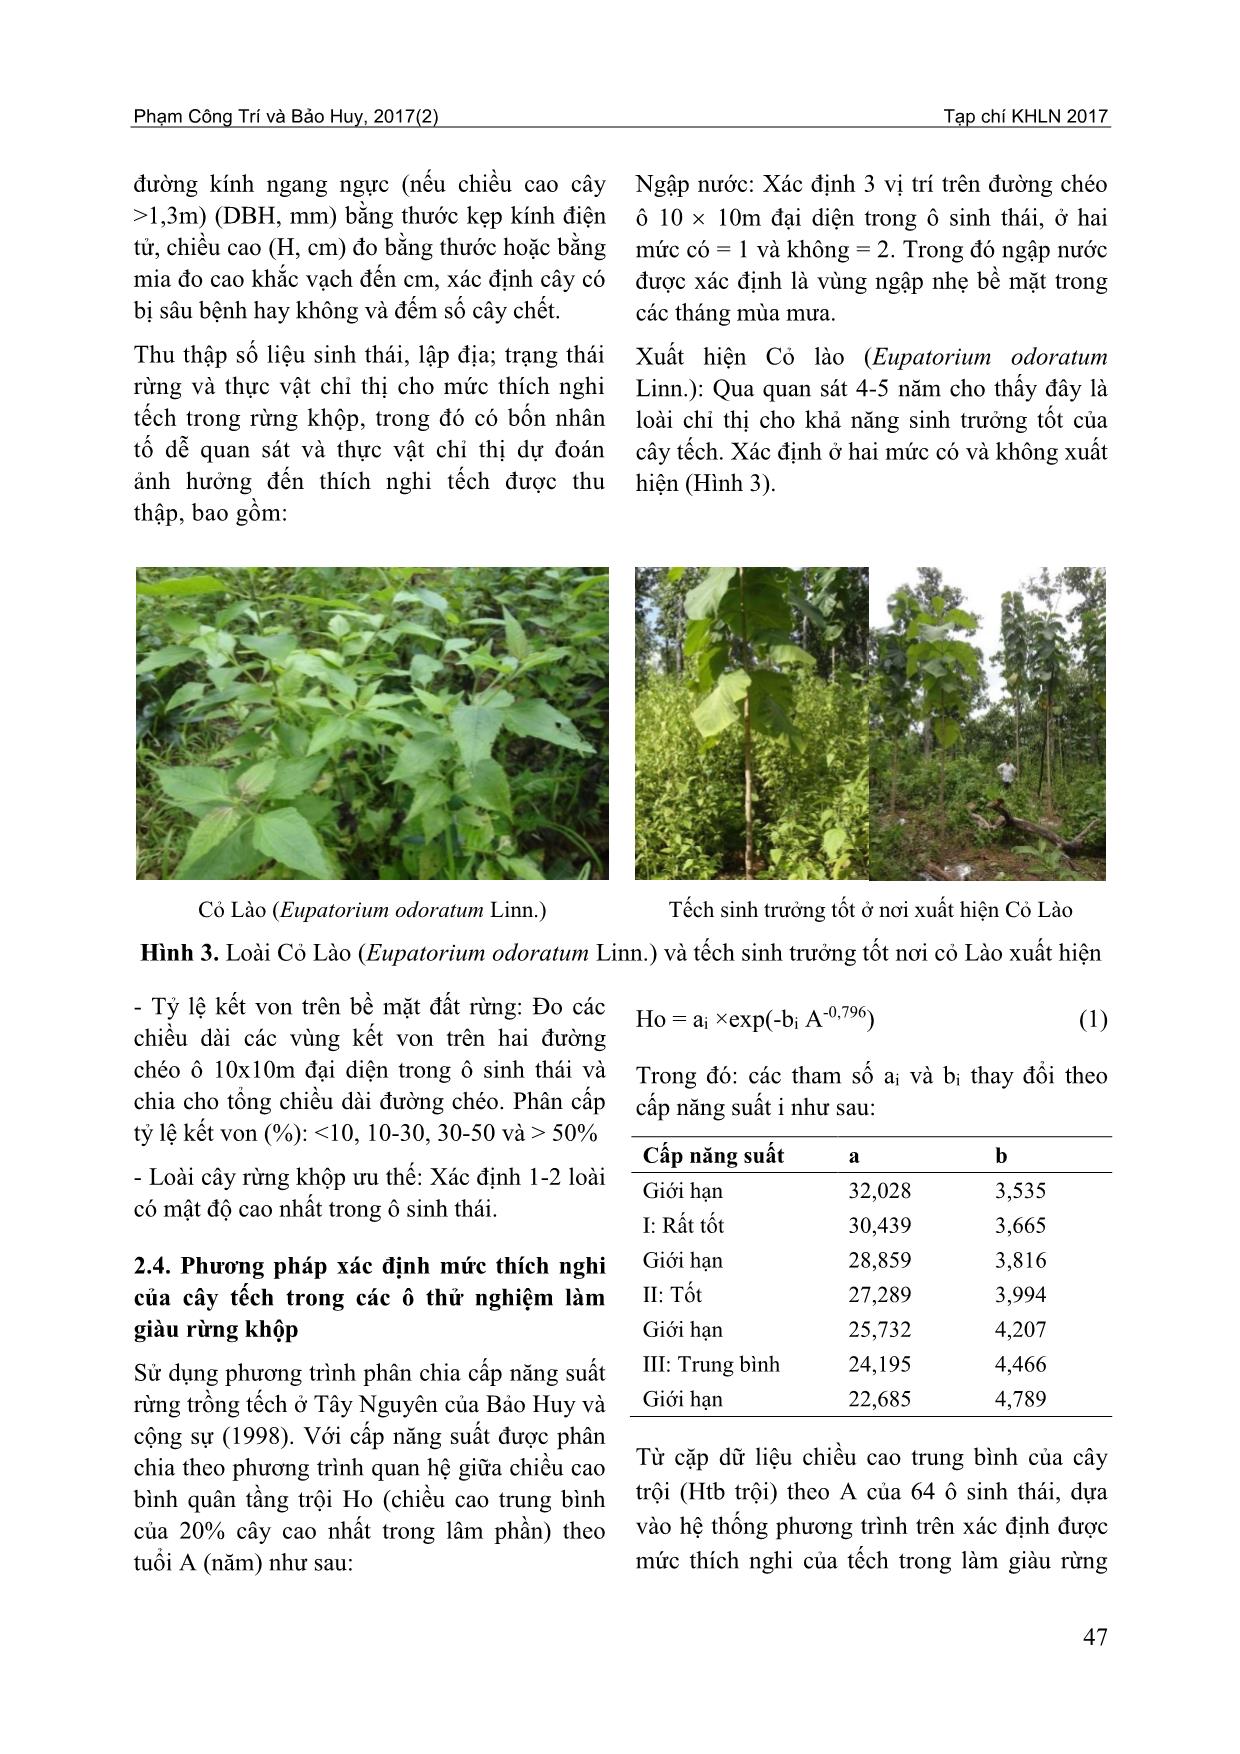 Xác định mức thích nghi của làm giàu rừng khộp bằng cây tếch (Tectona grandis L.F.) theo các nhân tố quan trắc trực tiếp và thực vật chỉ thị trang 5